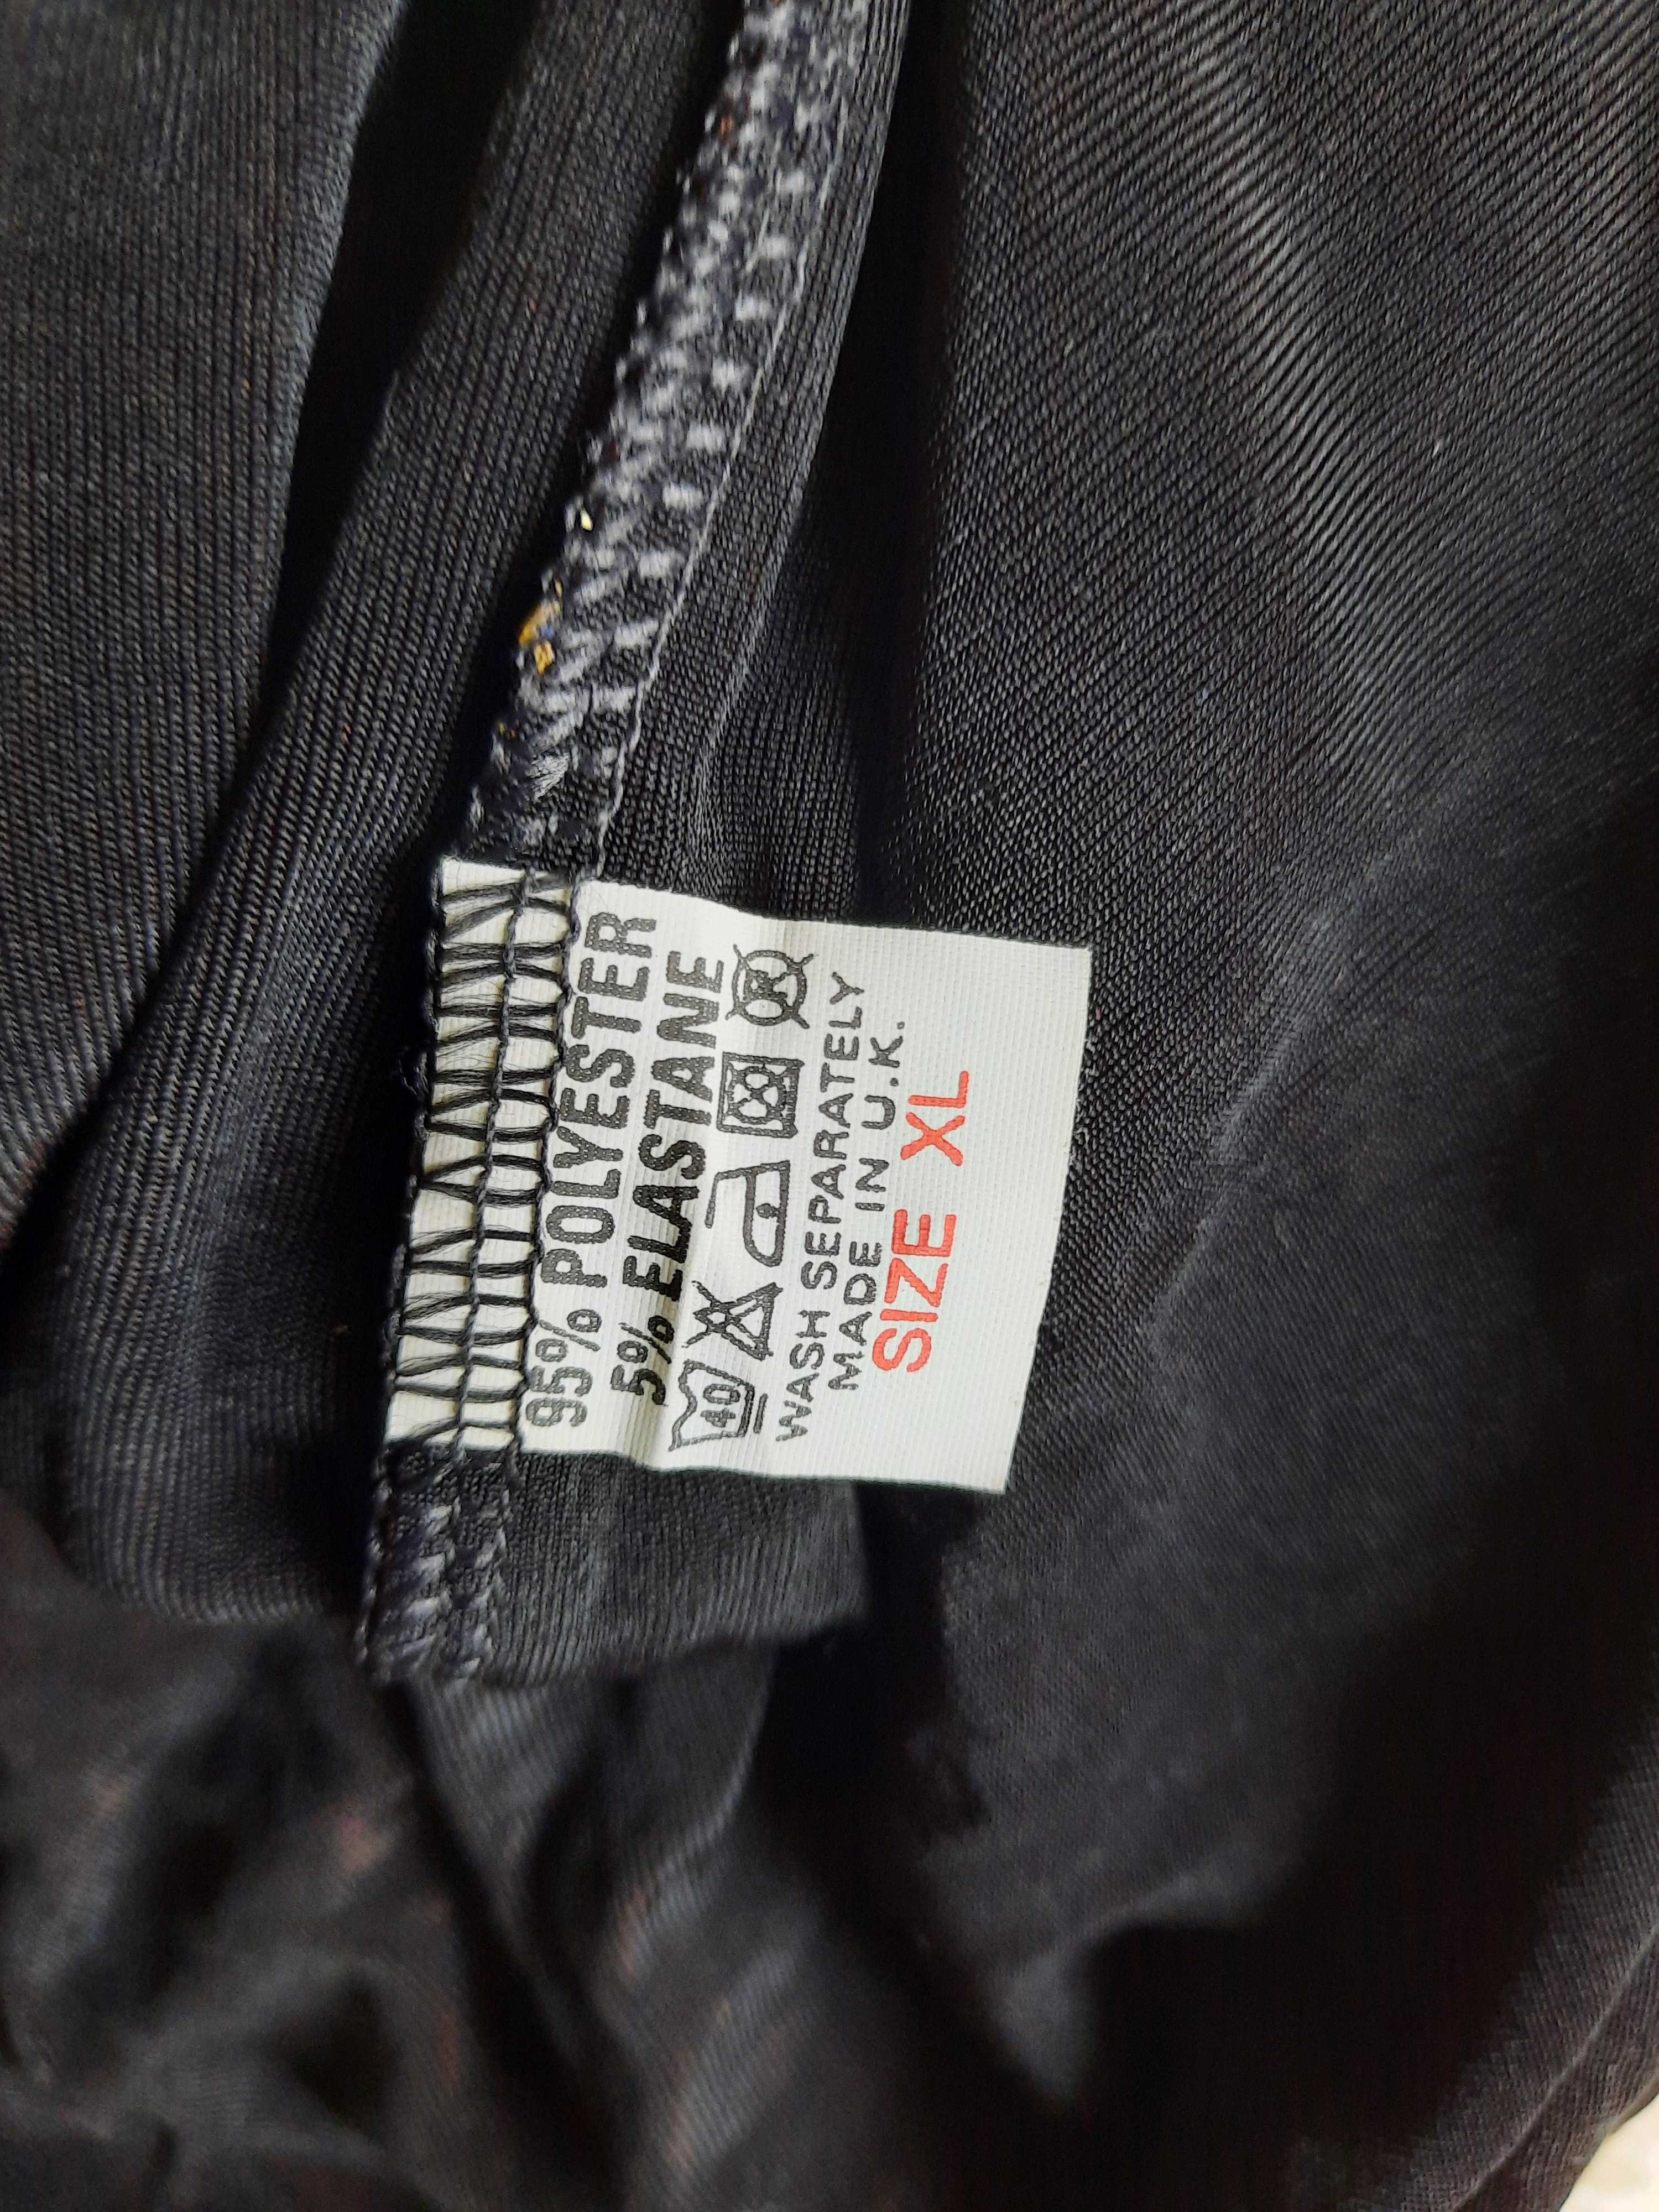 Bluzka-tunika czarna z błyszczącymi elementami R.XL